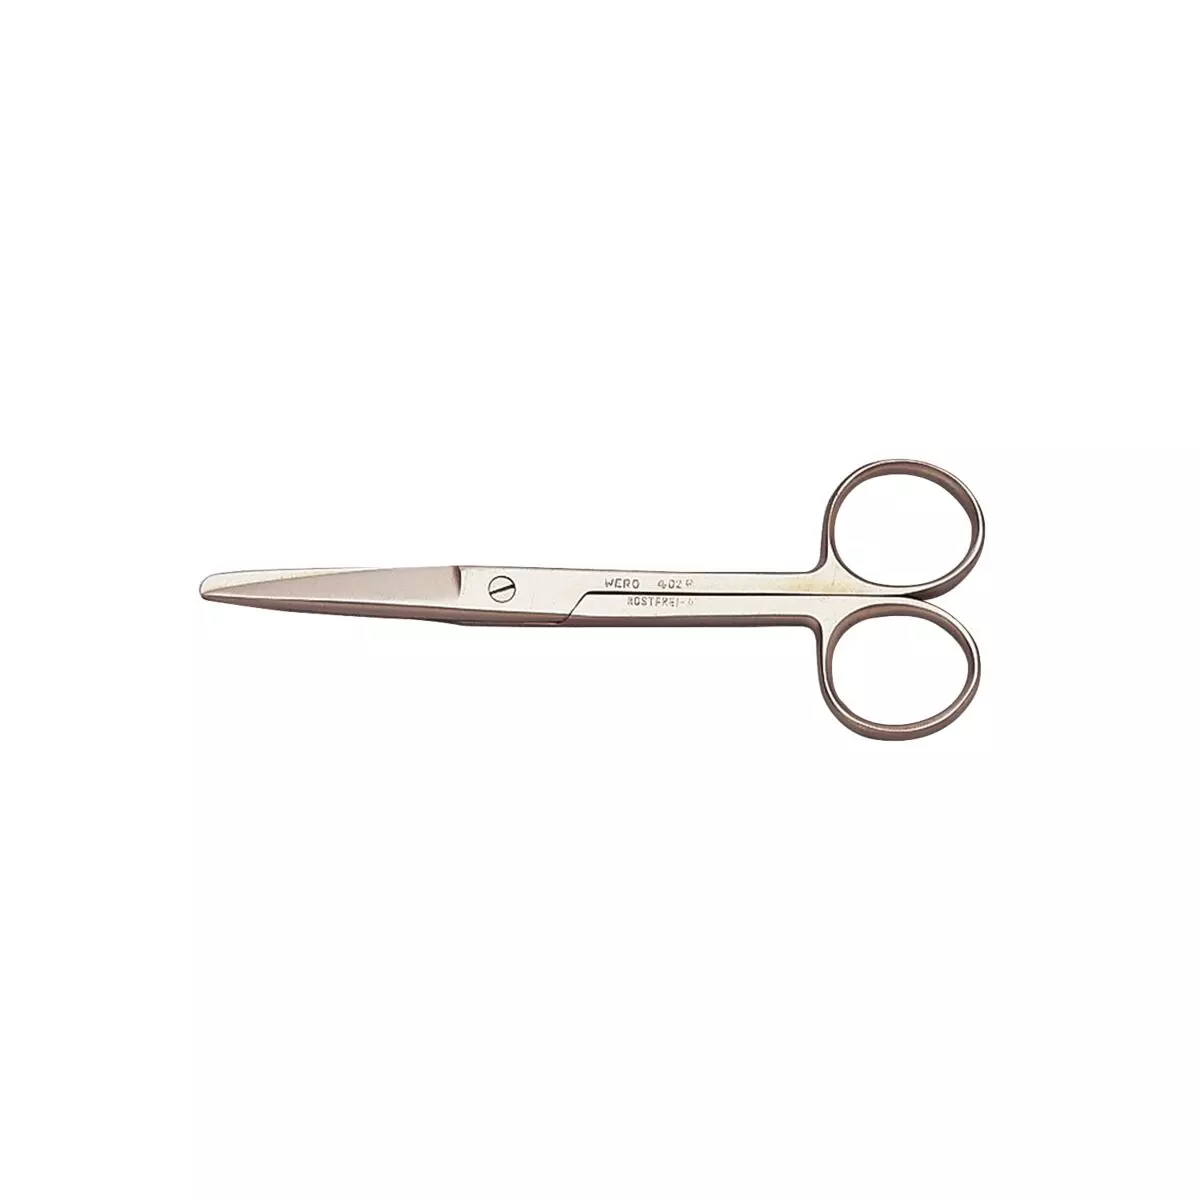 Bandage scissors, 12.5 cm